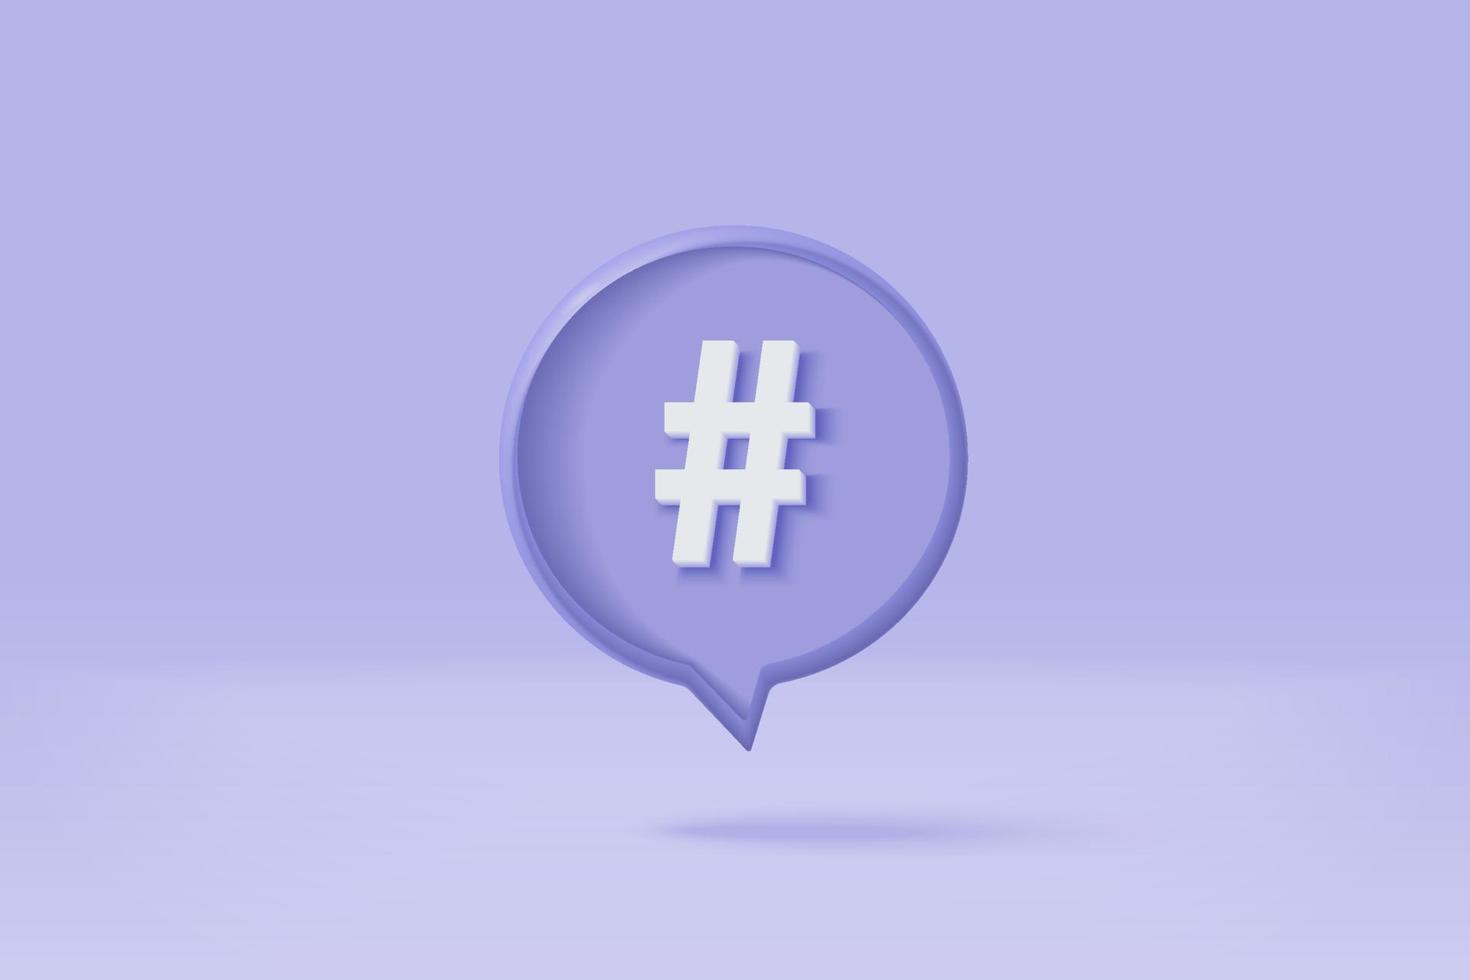 3D hashtag söklänk symbol på sociala medier meddelande ikon isolerad på lila bakgrund. kommentarer tråd omnämnande eller användarsvar skylt med sociala medier. 3D hashtag på vektor render illustration